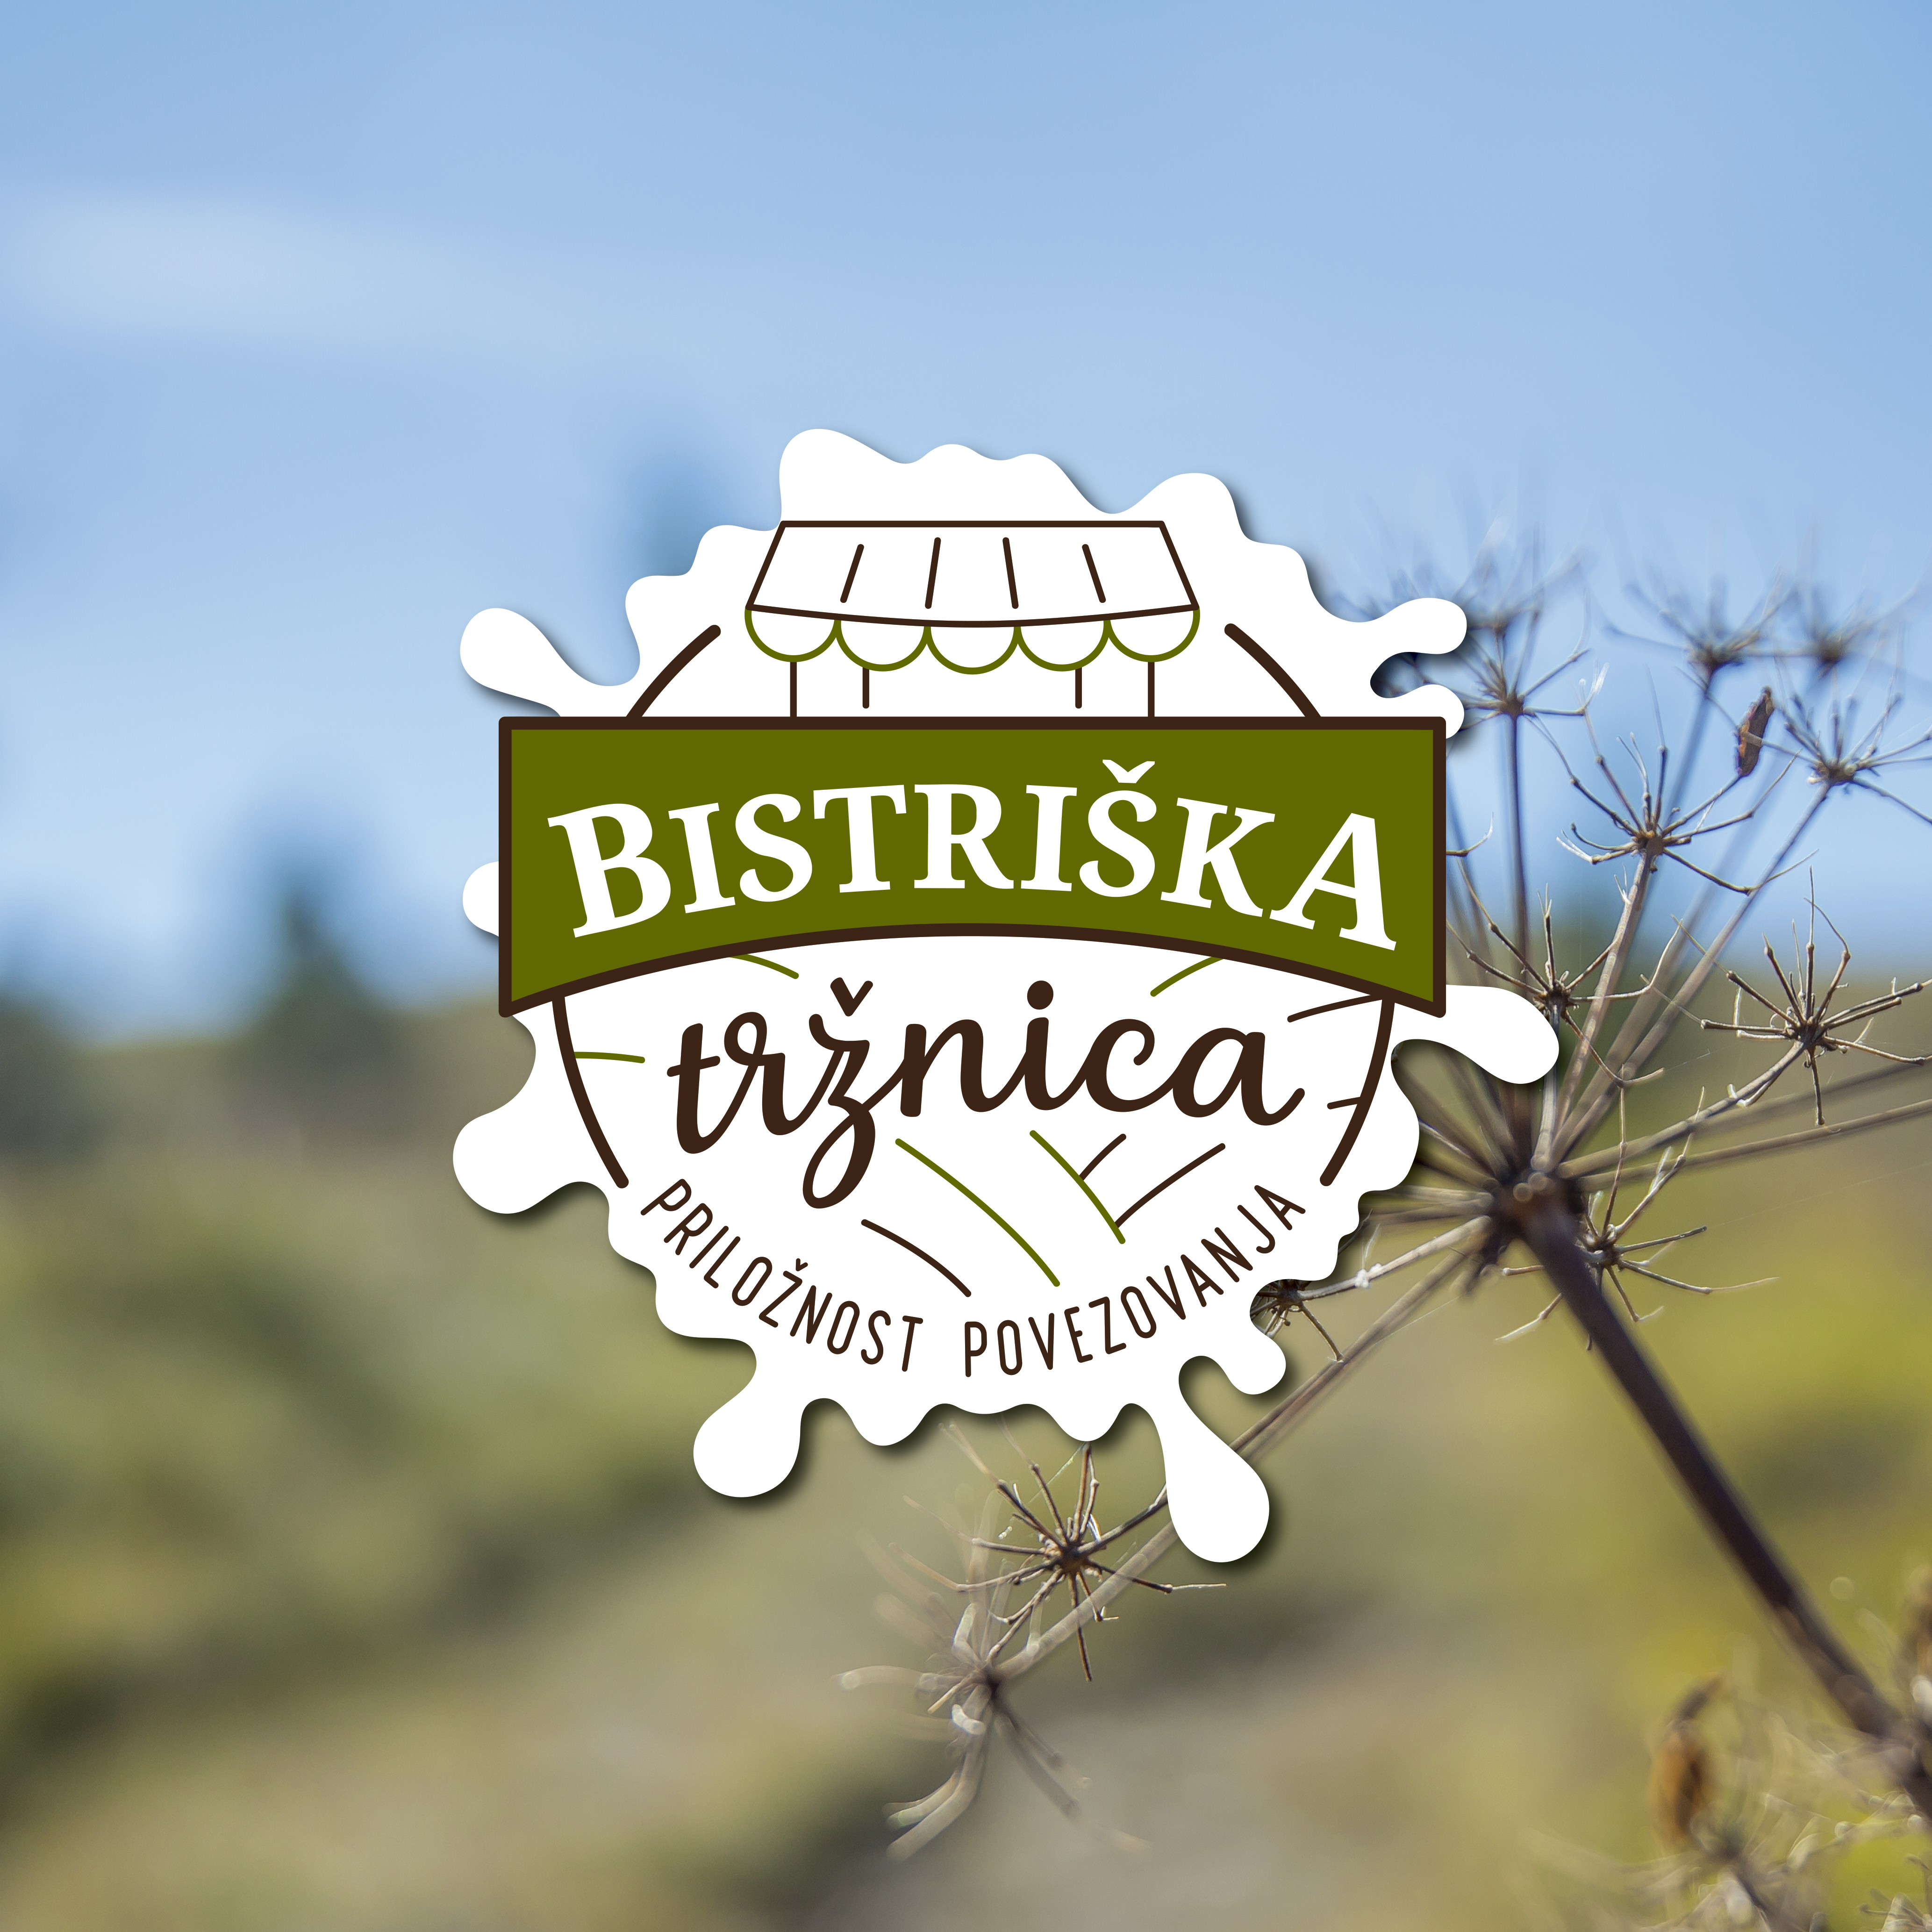 Bistriska_trznica_logo1